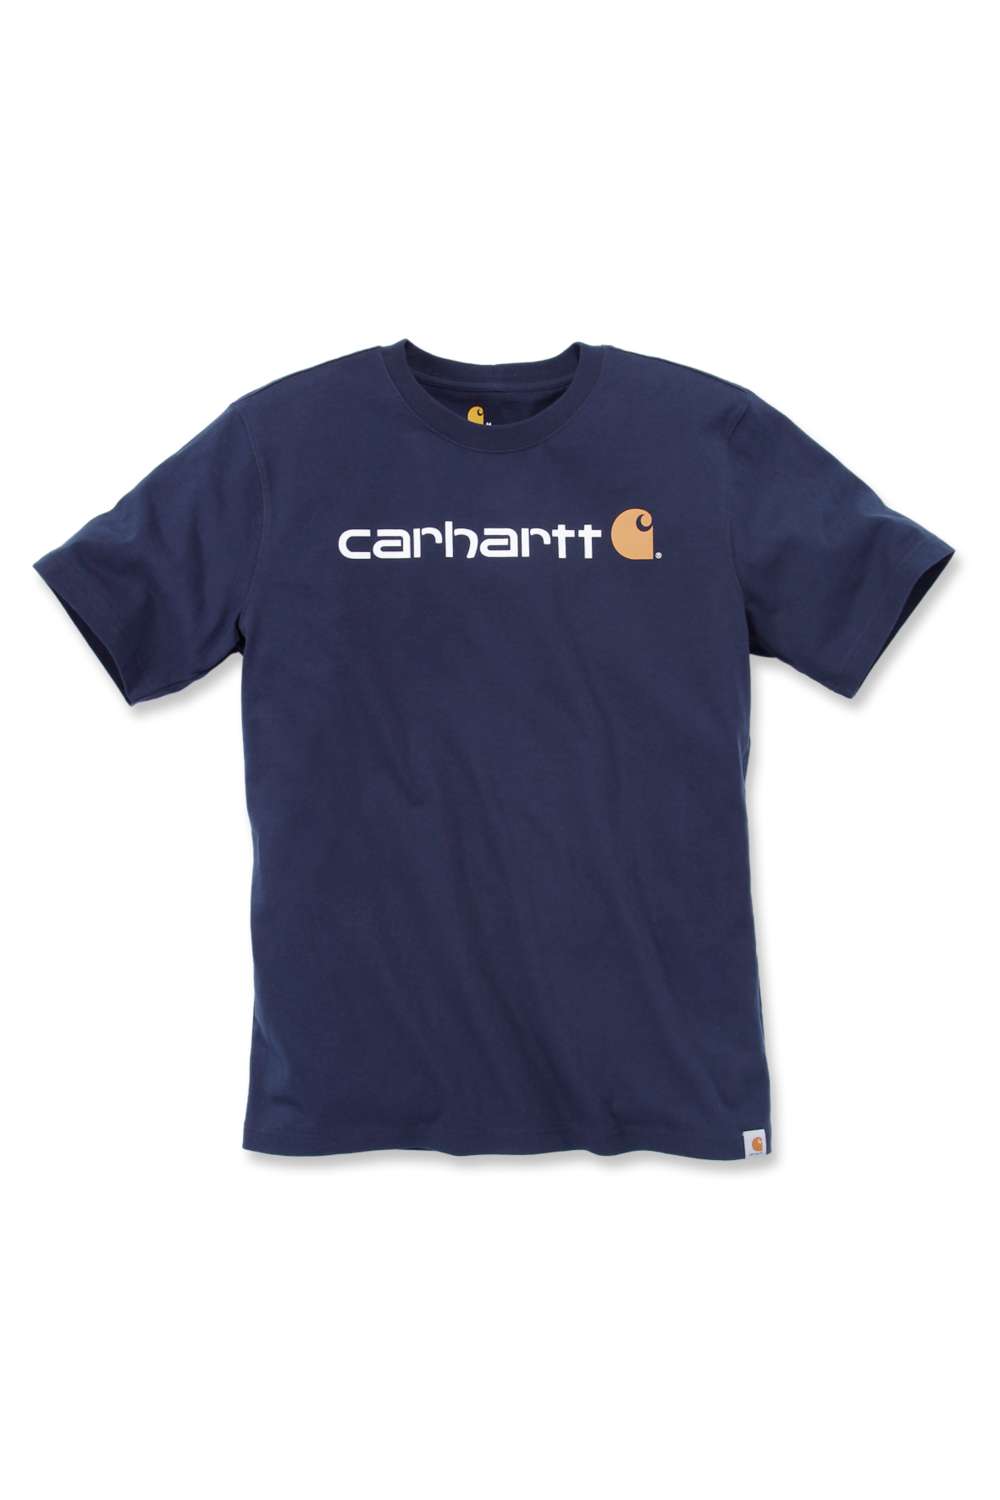 Herren-T-Shirt Relaxed Fit Mit Carhartt-Logo